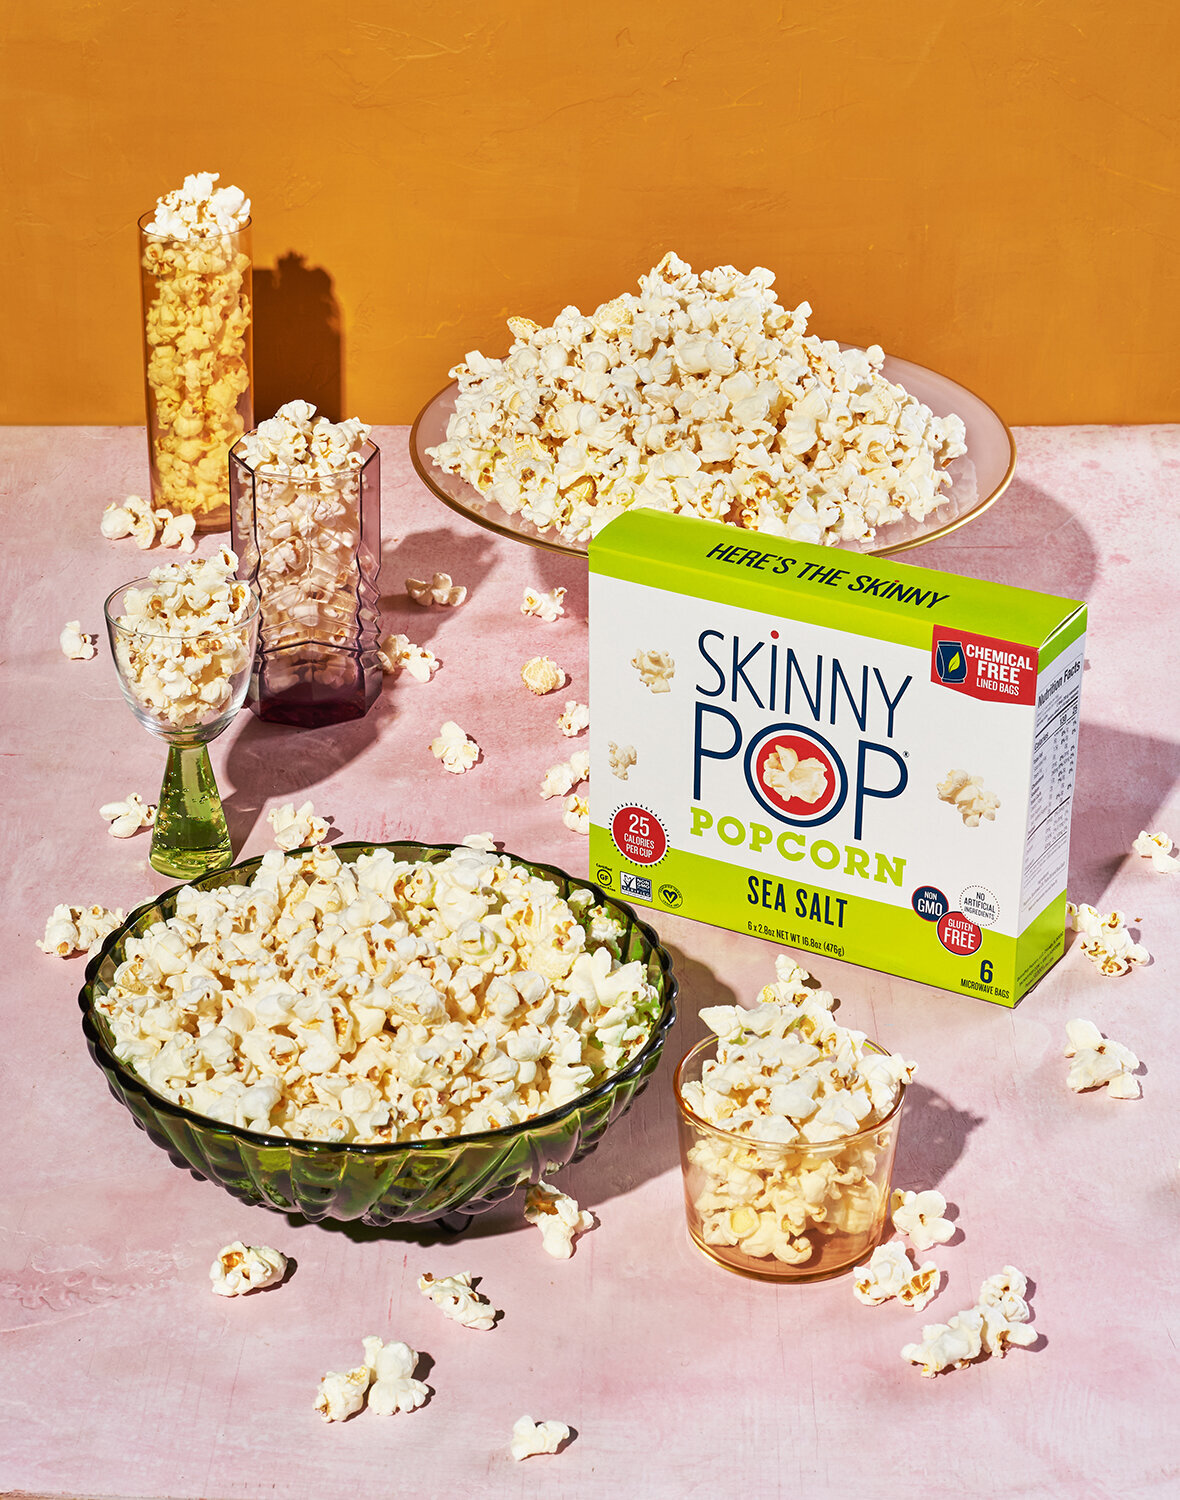 skinnypop popcorn packaging still life